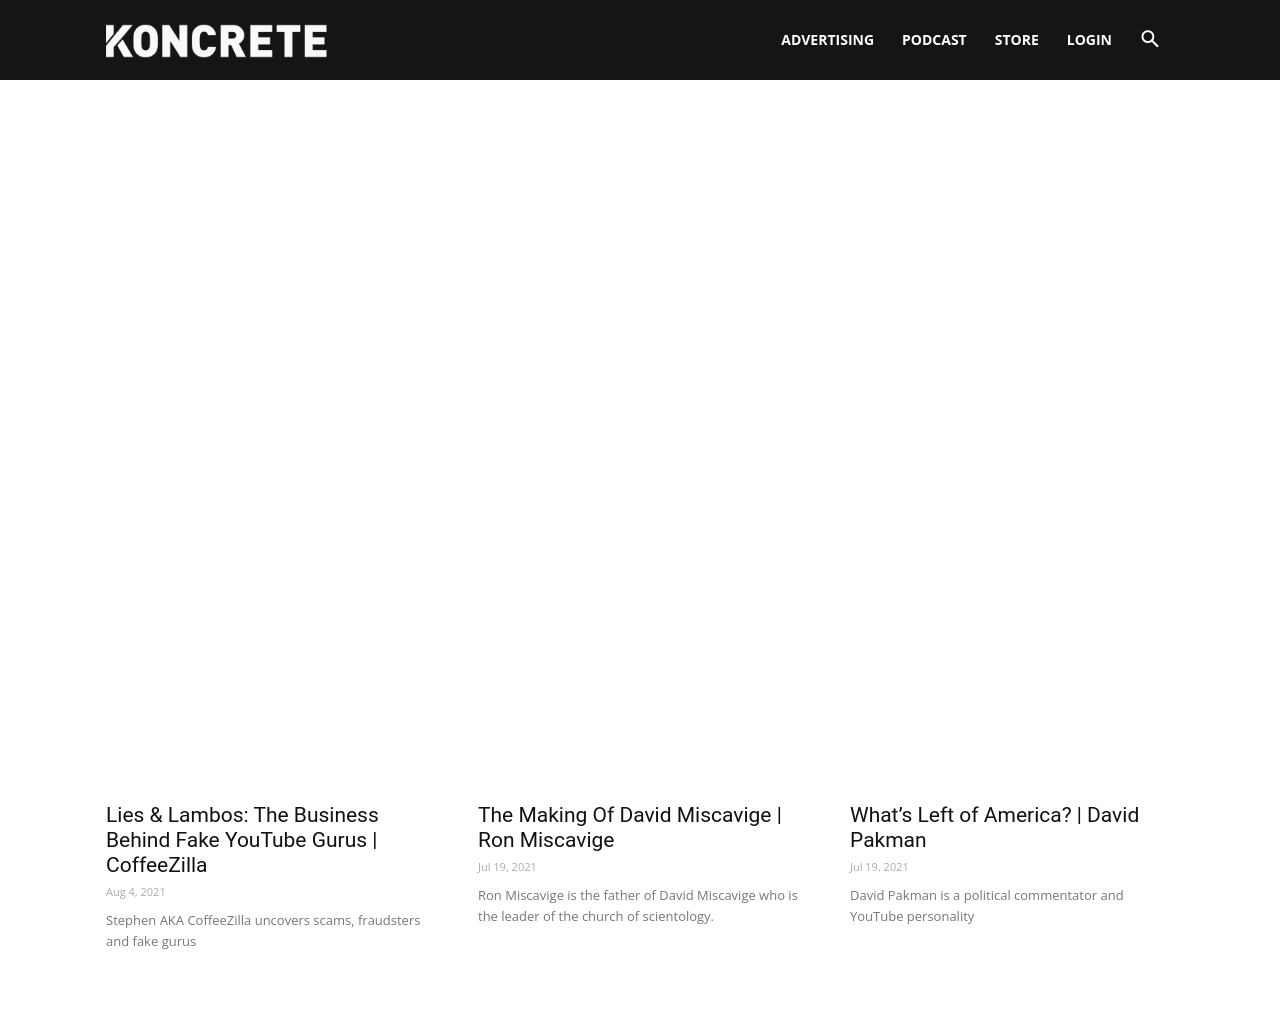 koncrete.com